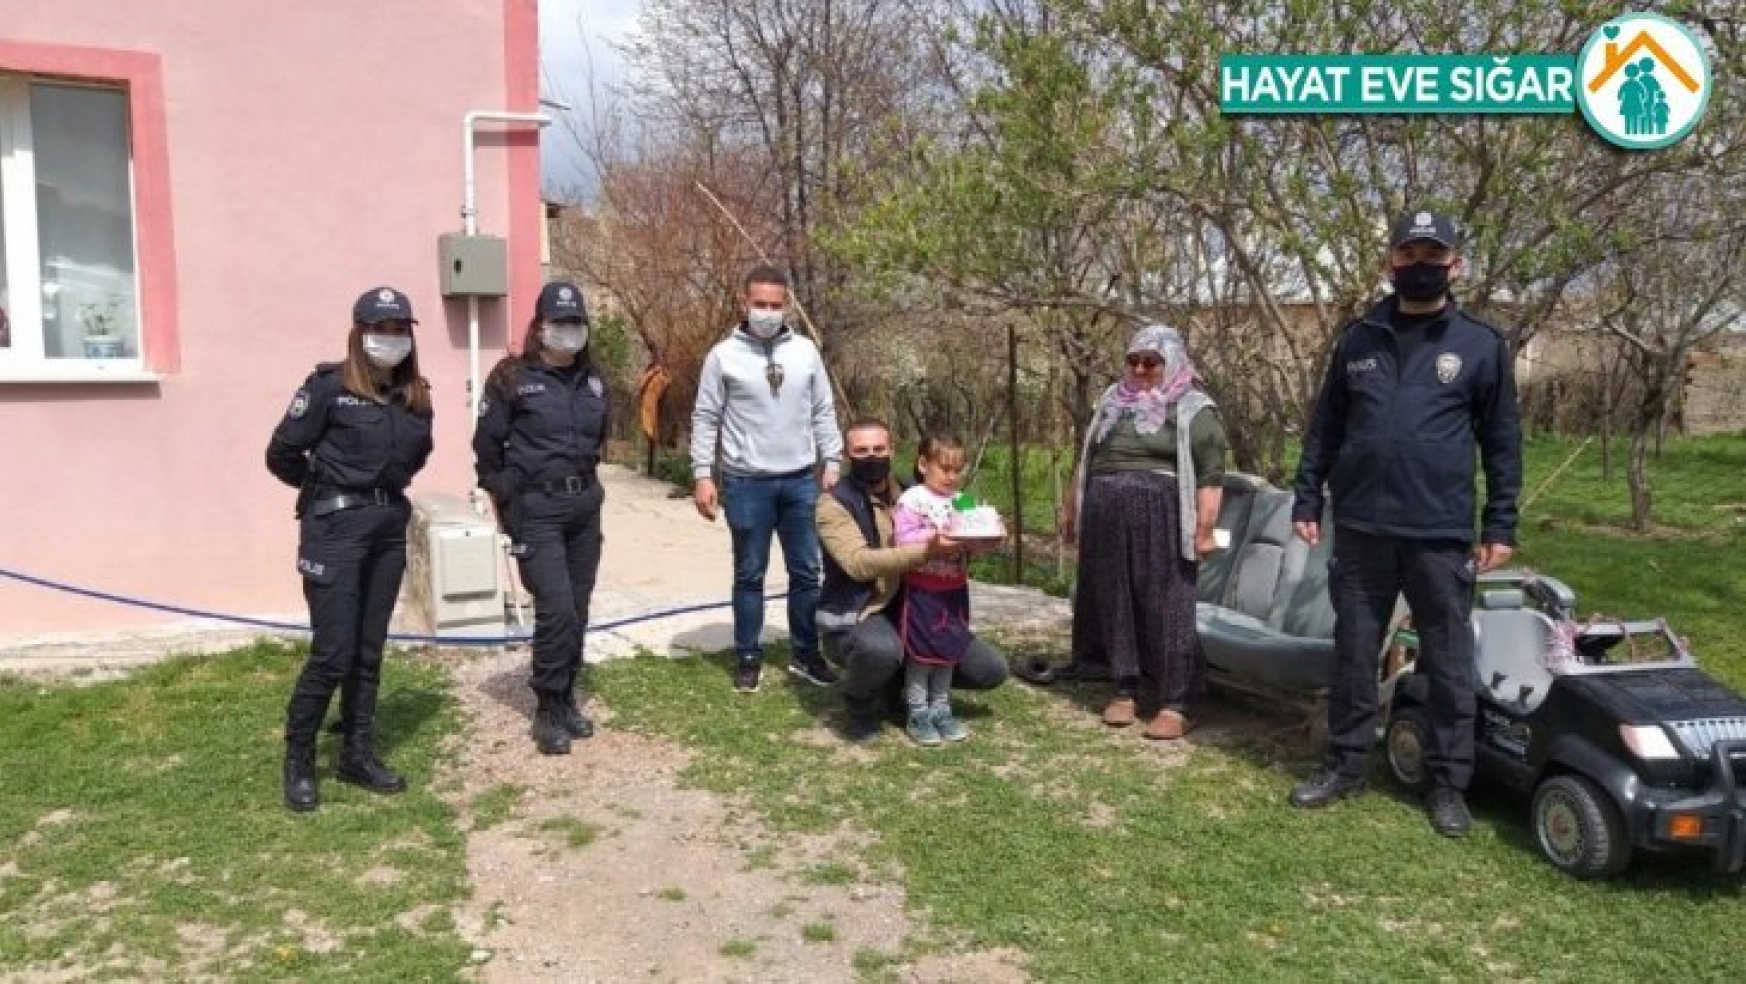 Annesi Covid-19 engeline takılan Ecrin'in doğum gününü polisler kutladı